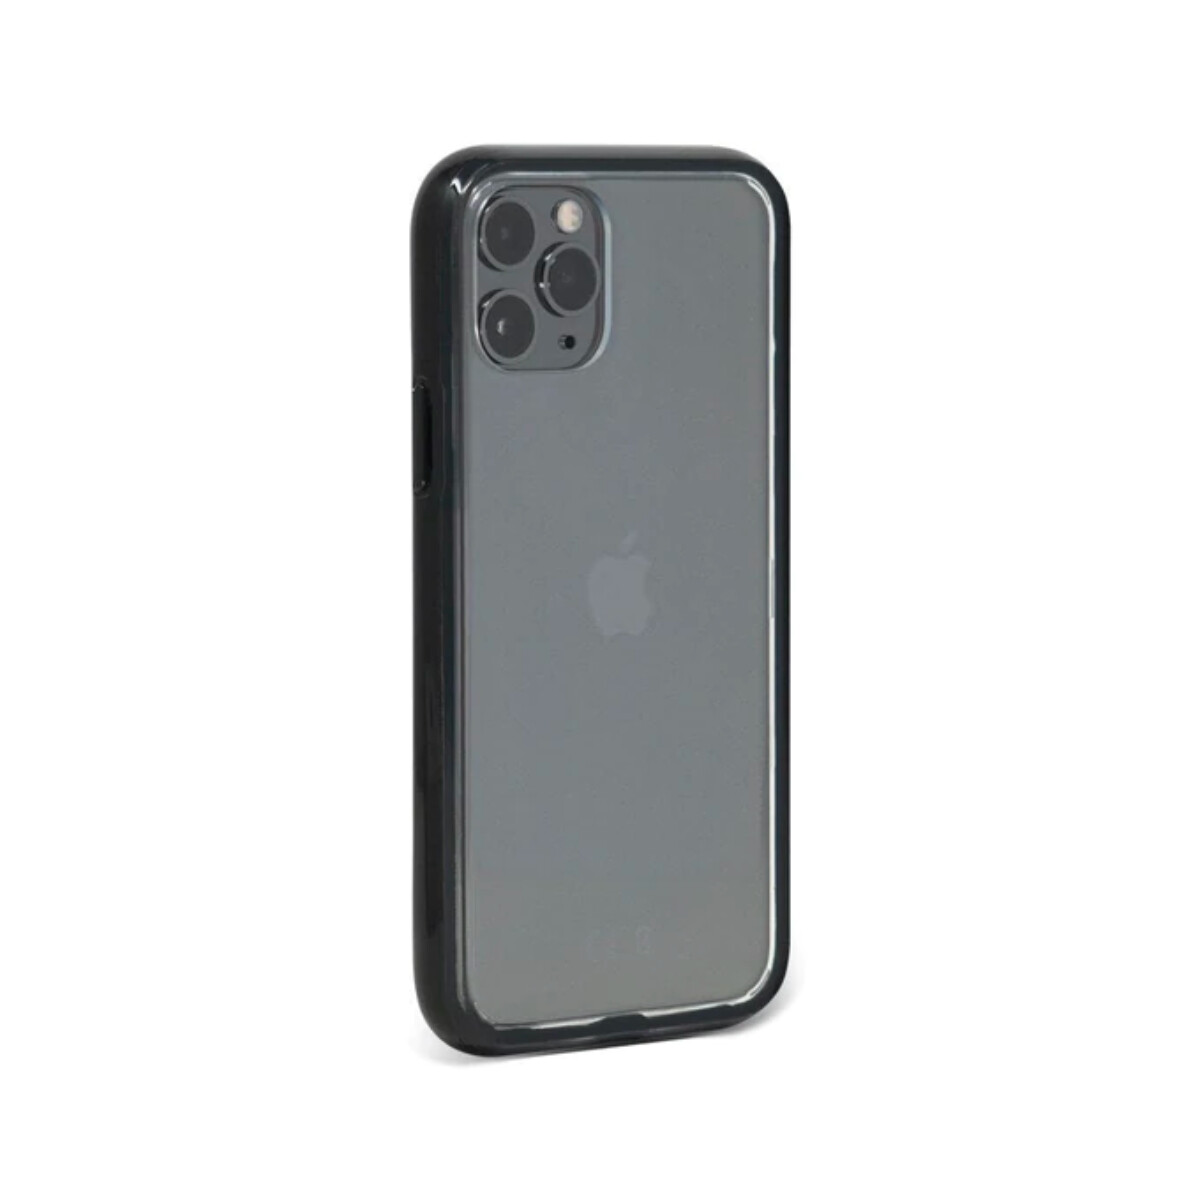 Mous case clarity iphone 11 pro - Transparente 